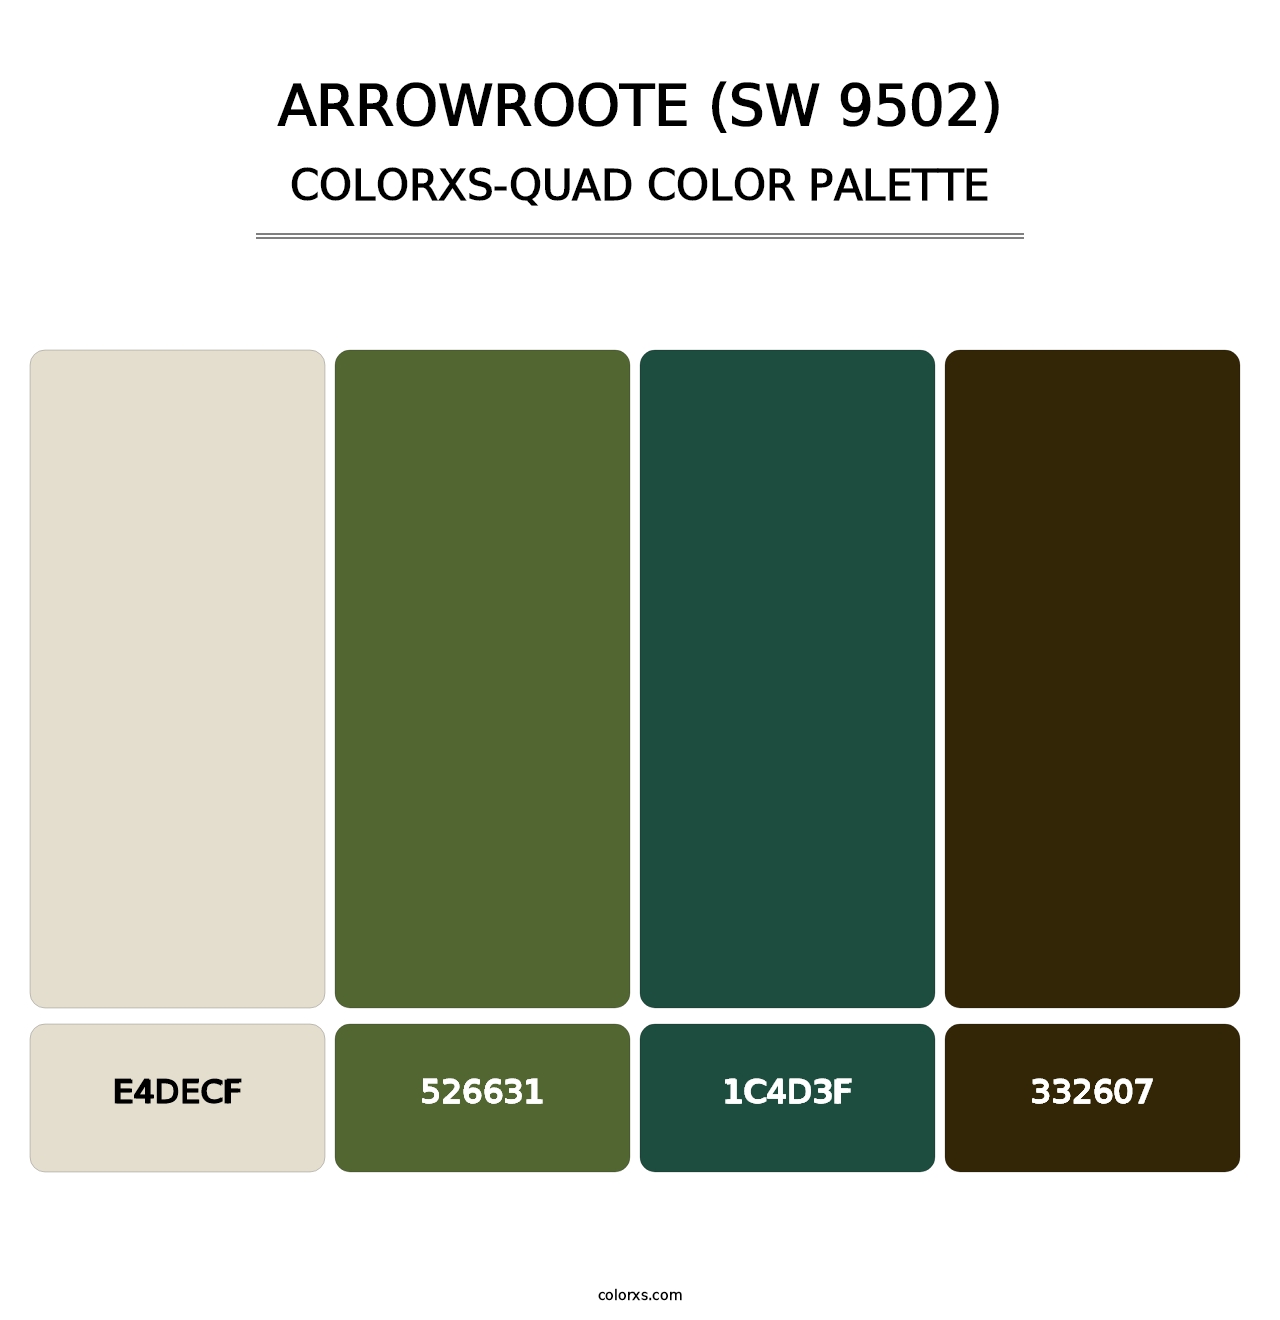 Arrowroote (SW 9502) - Colorxs Quad Palette